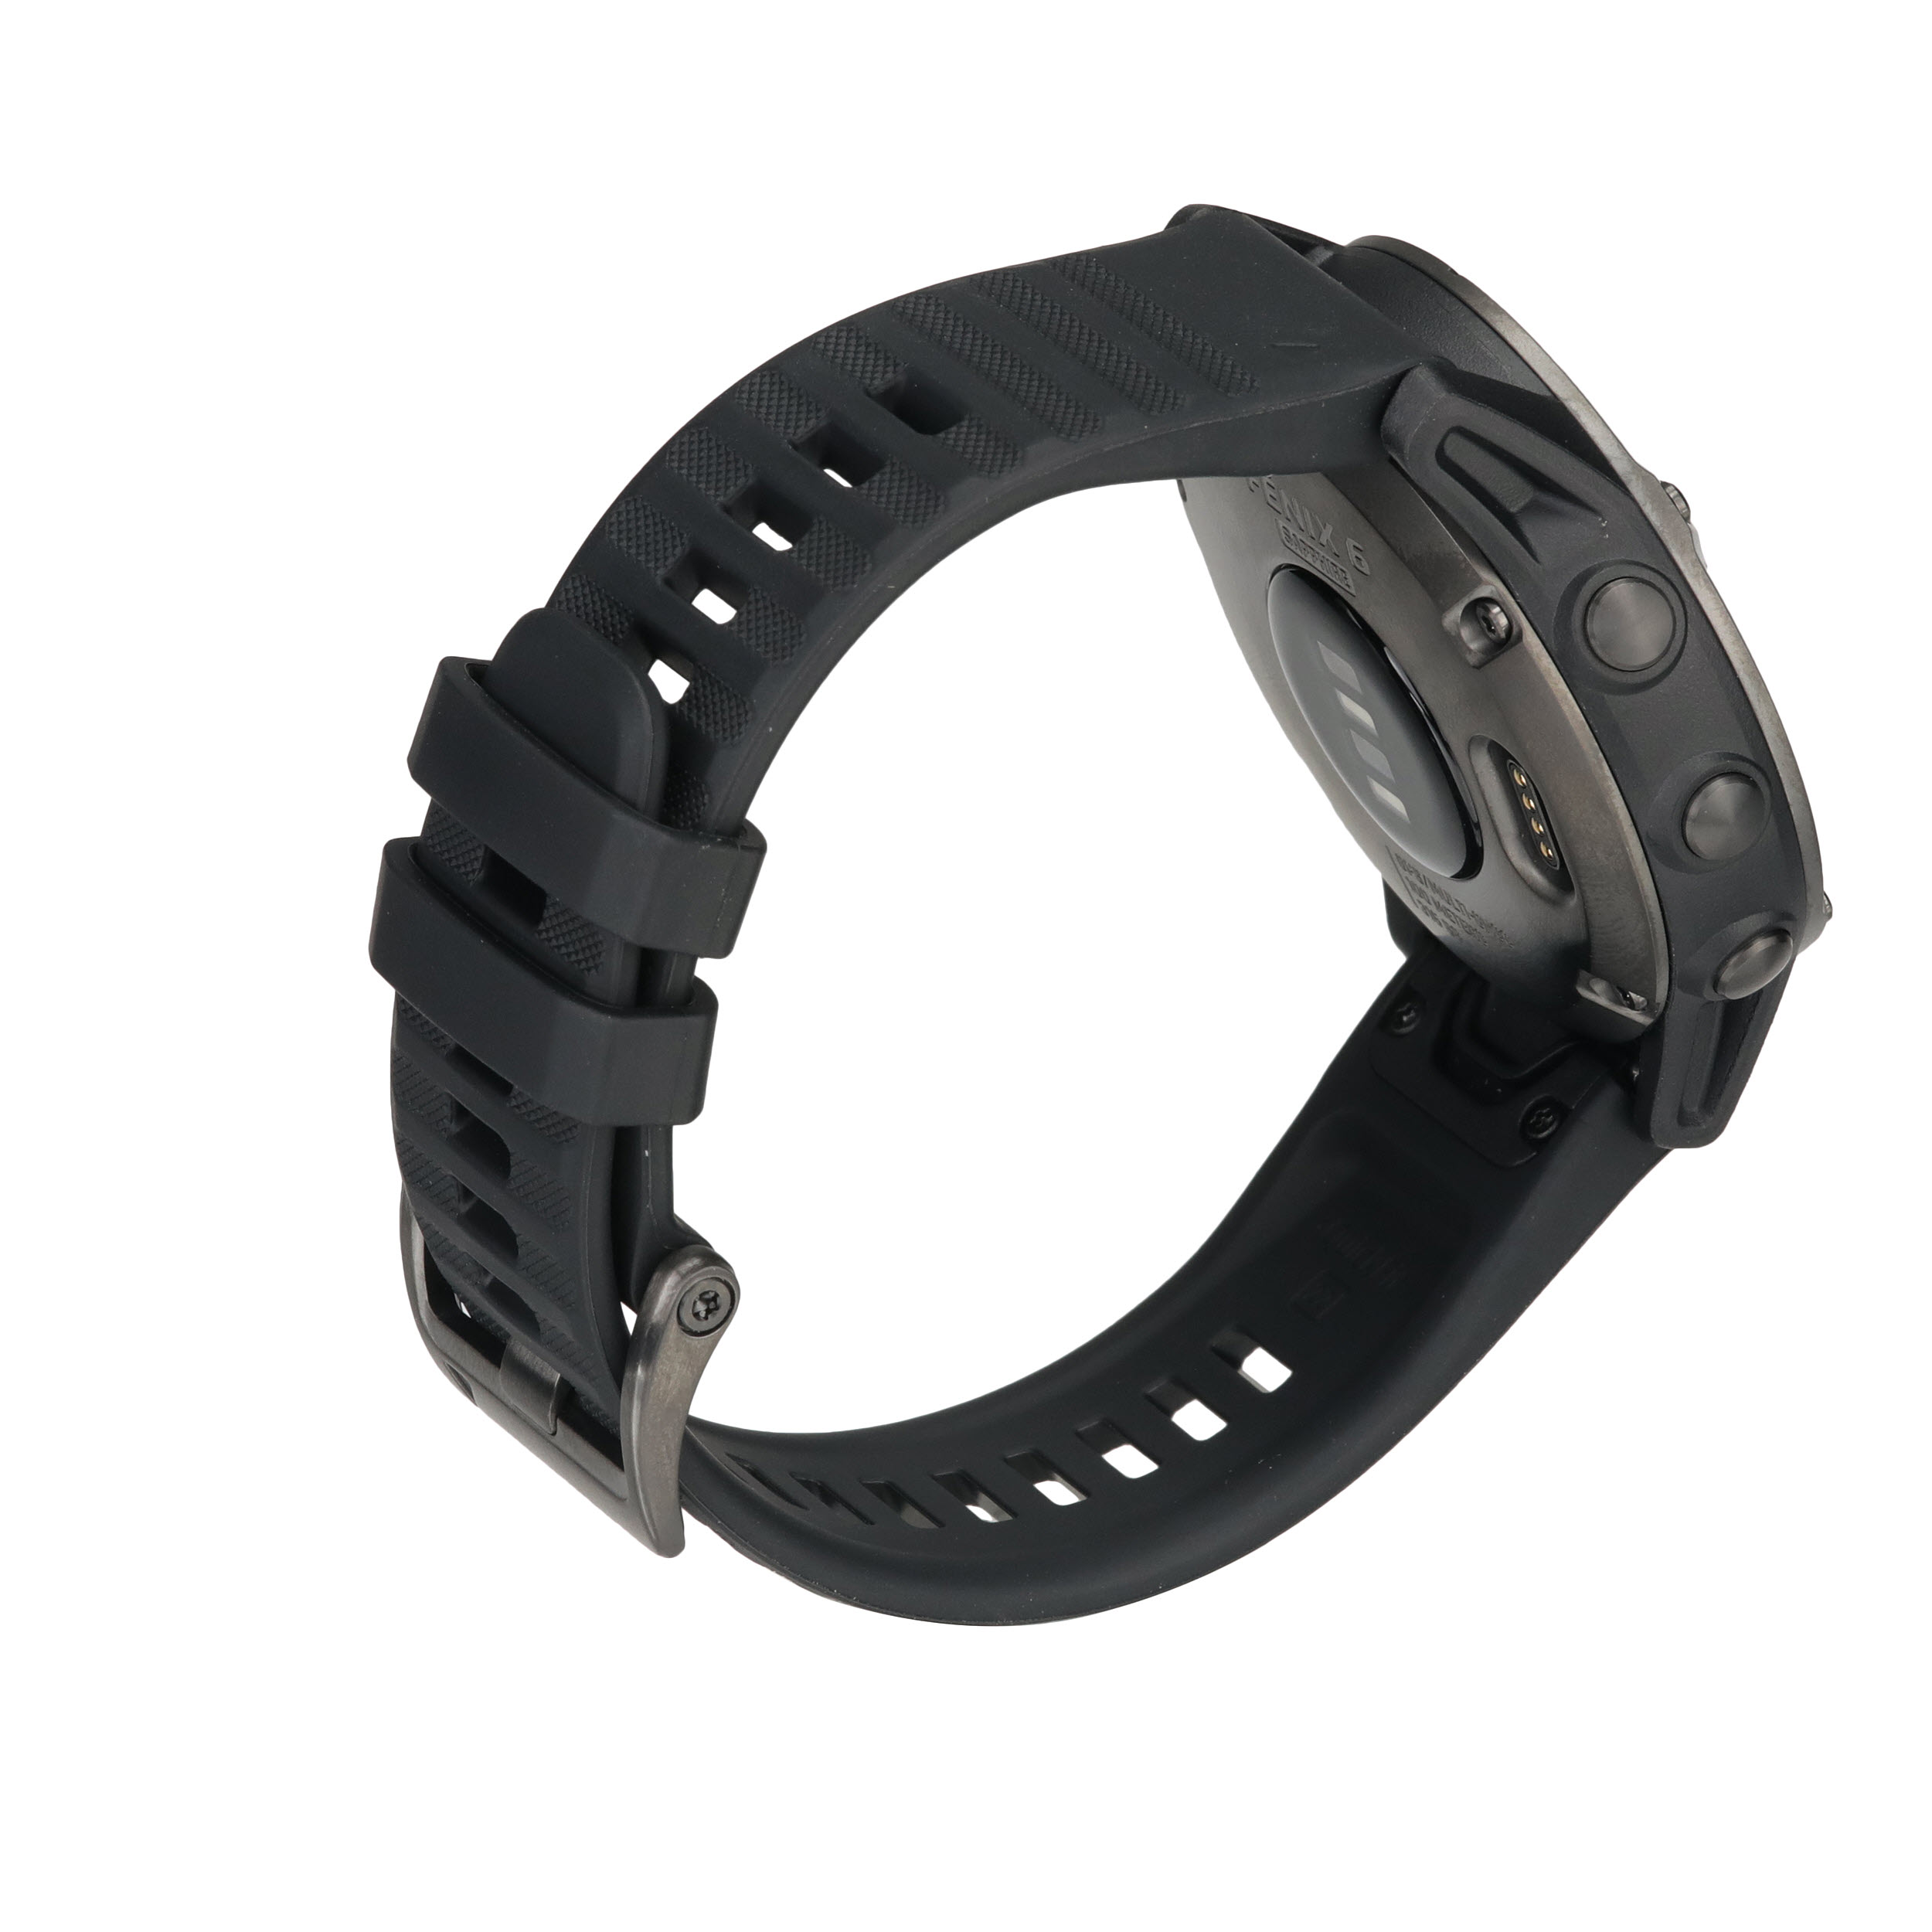 GARMIN fēnix 6 Sapphire, carbon gray DLC avec bracelet noir